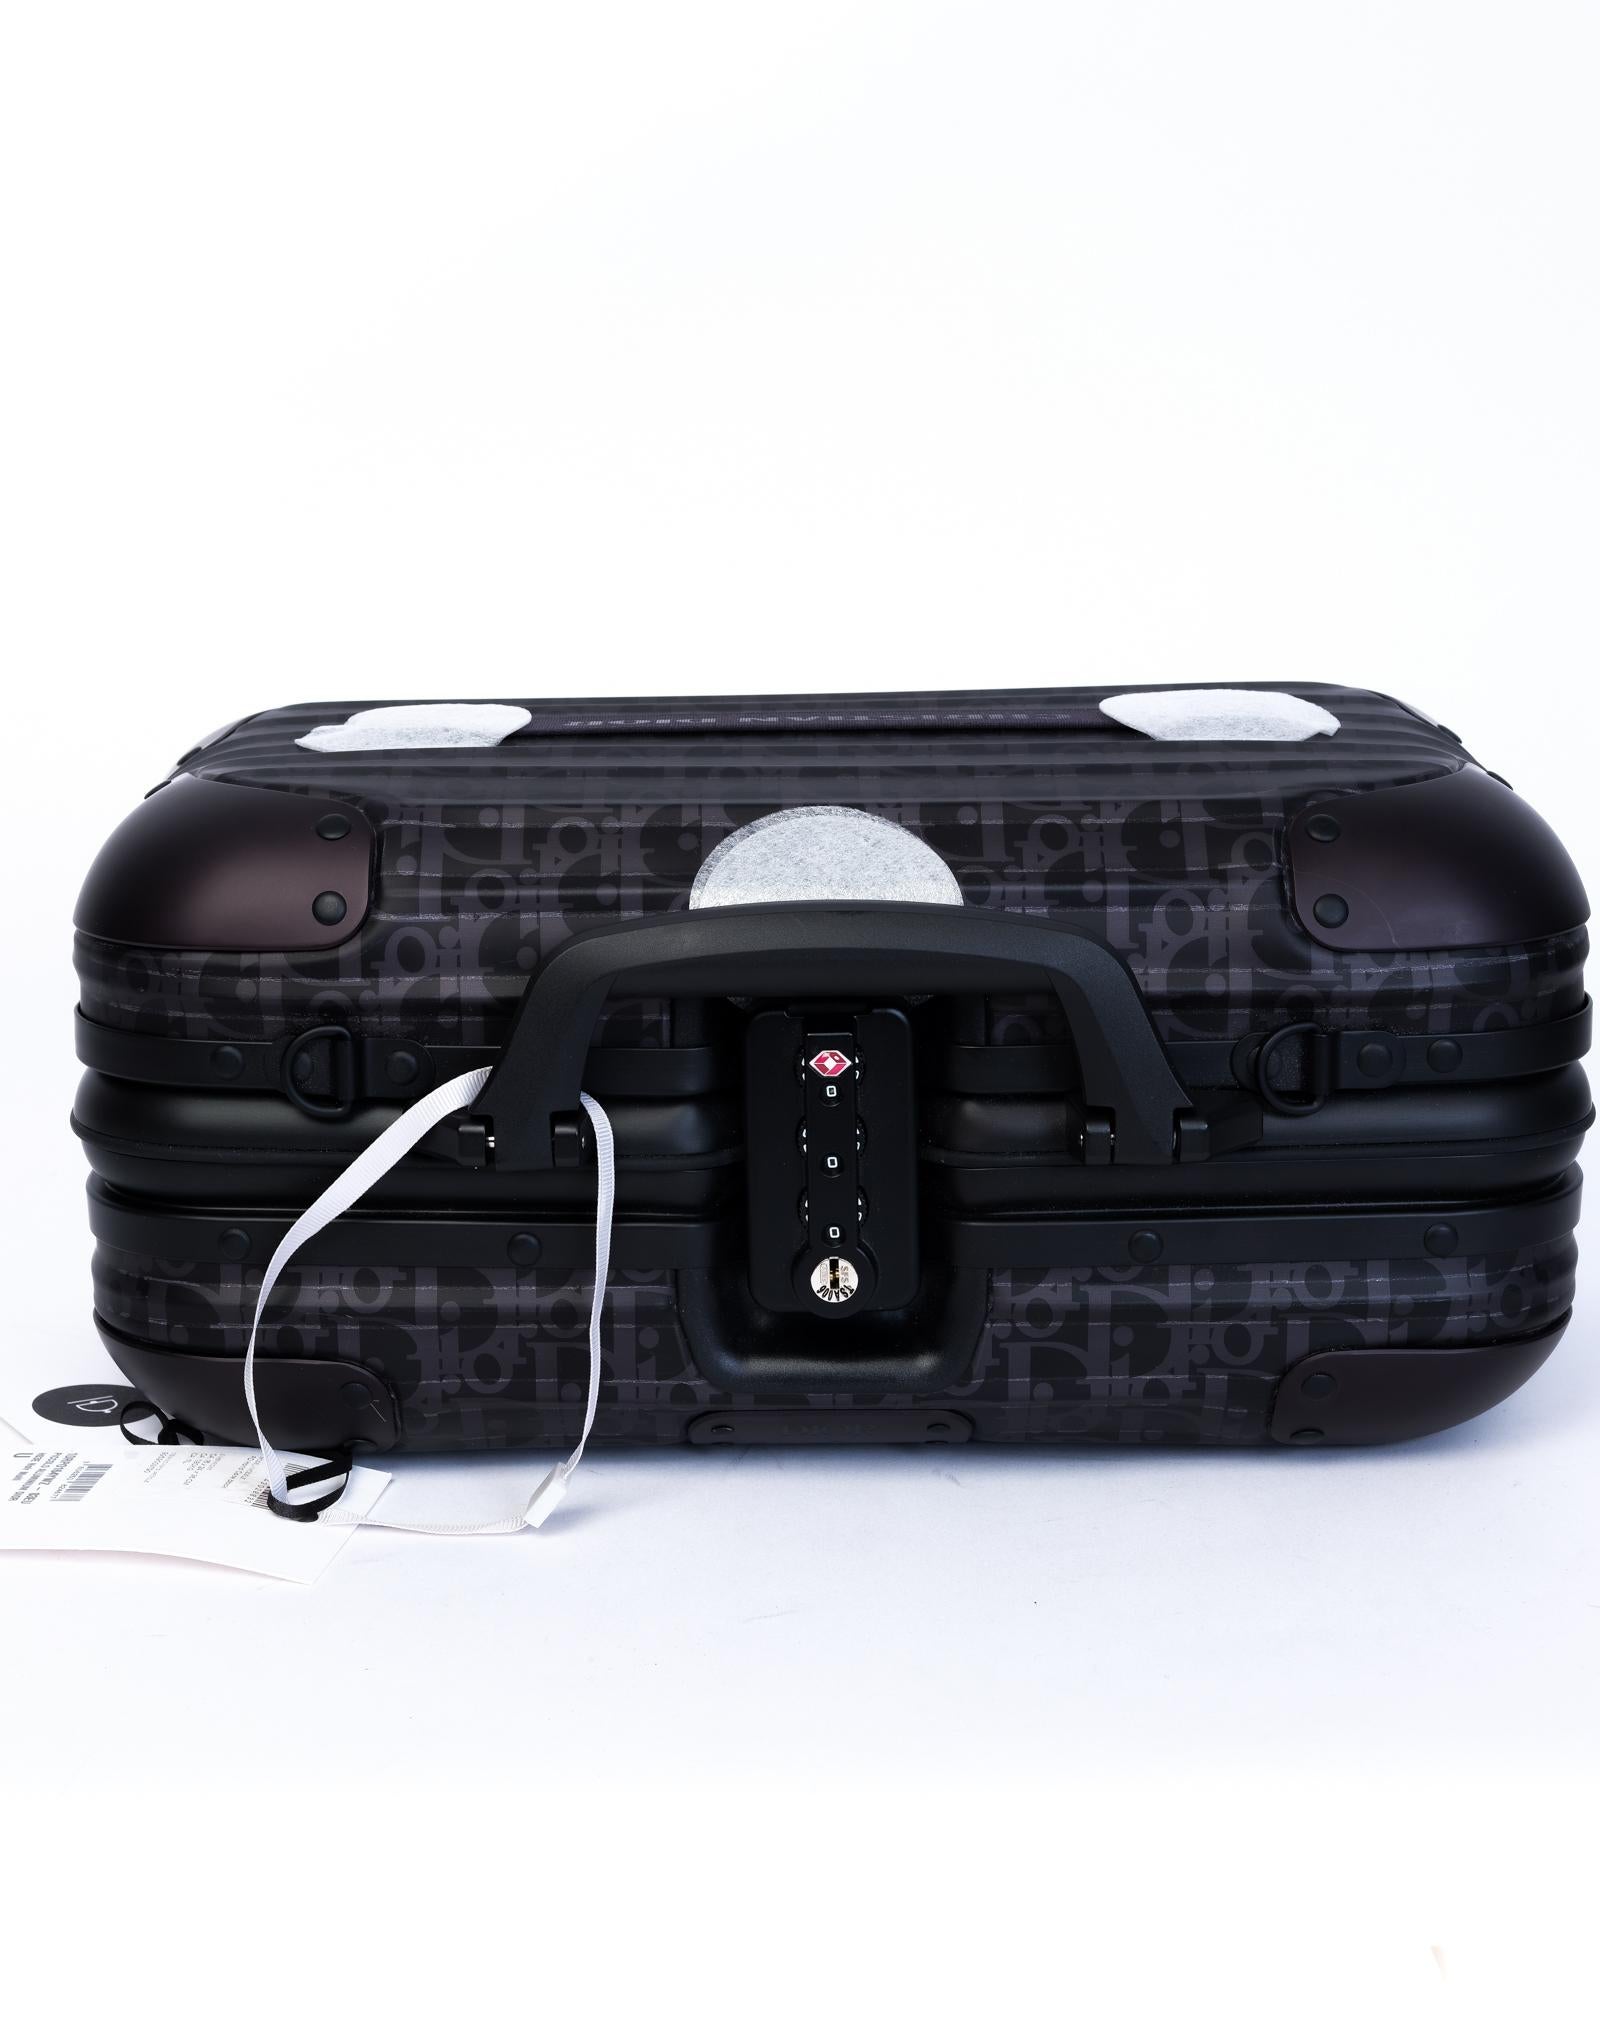 DIOR X RIMOWA Hand Case schwarz schräg Aluminium. Seltene Aluminiumhandtasche mit dem emblematischen Dior Oblique Design auf der Außen- und Innenseite, schwarzen Kunststoffgriffen, einem abnehmbaren schwarzen Nylonriemen, einem Schlüssel- und